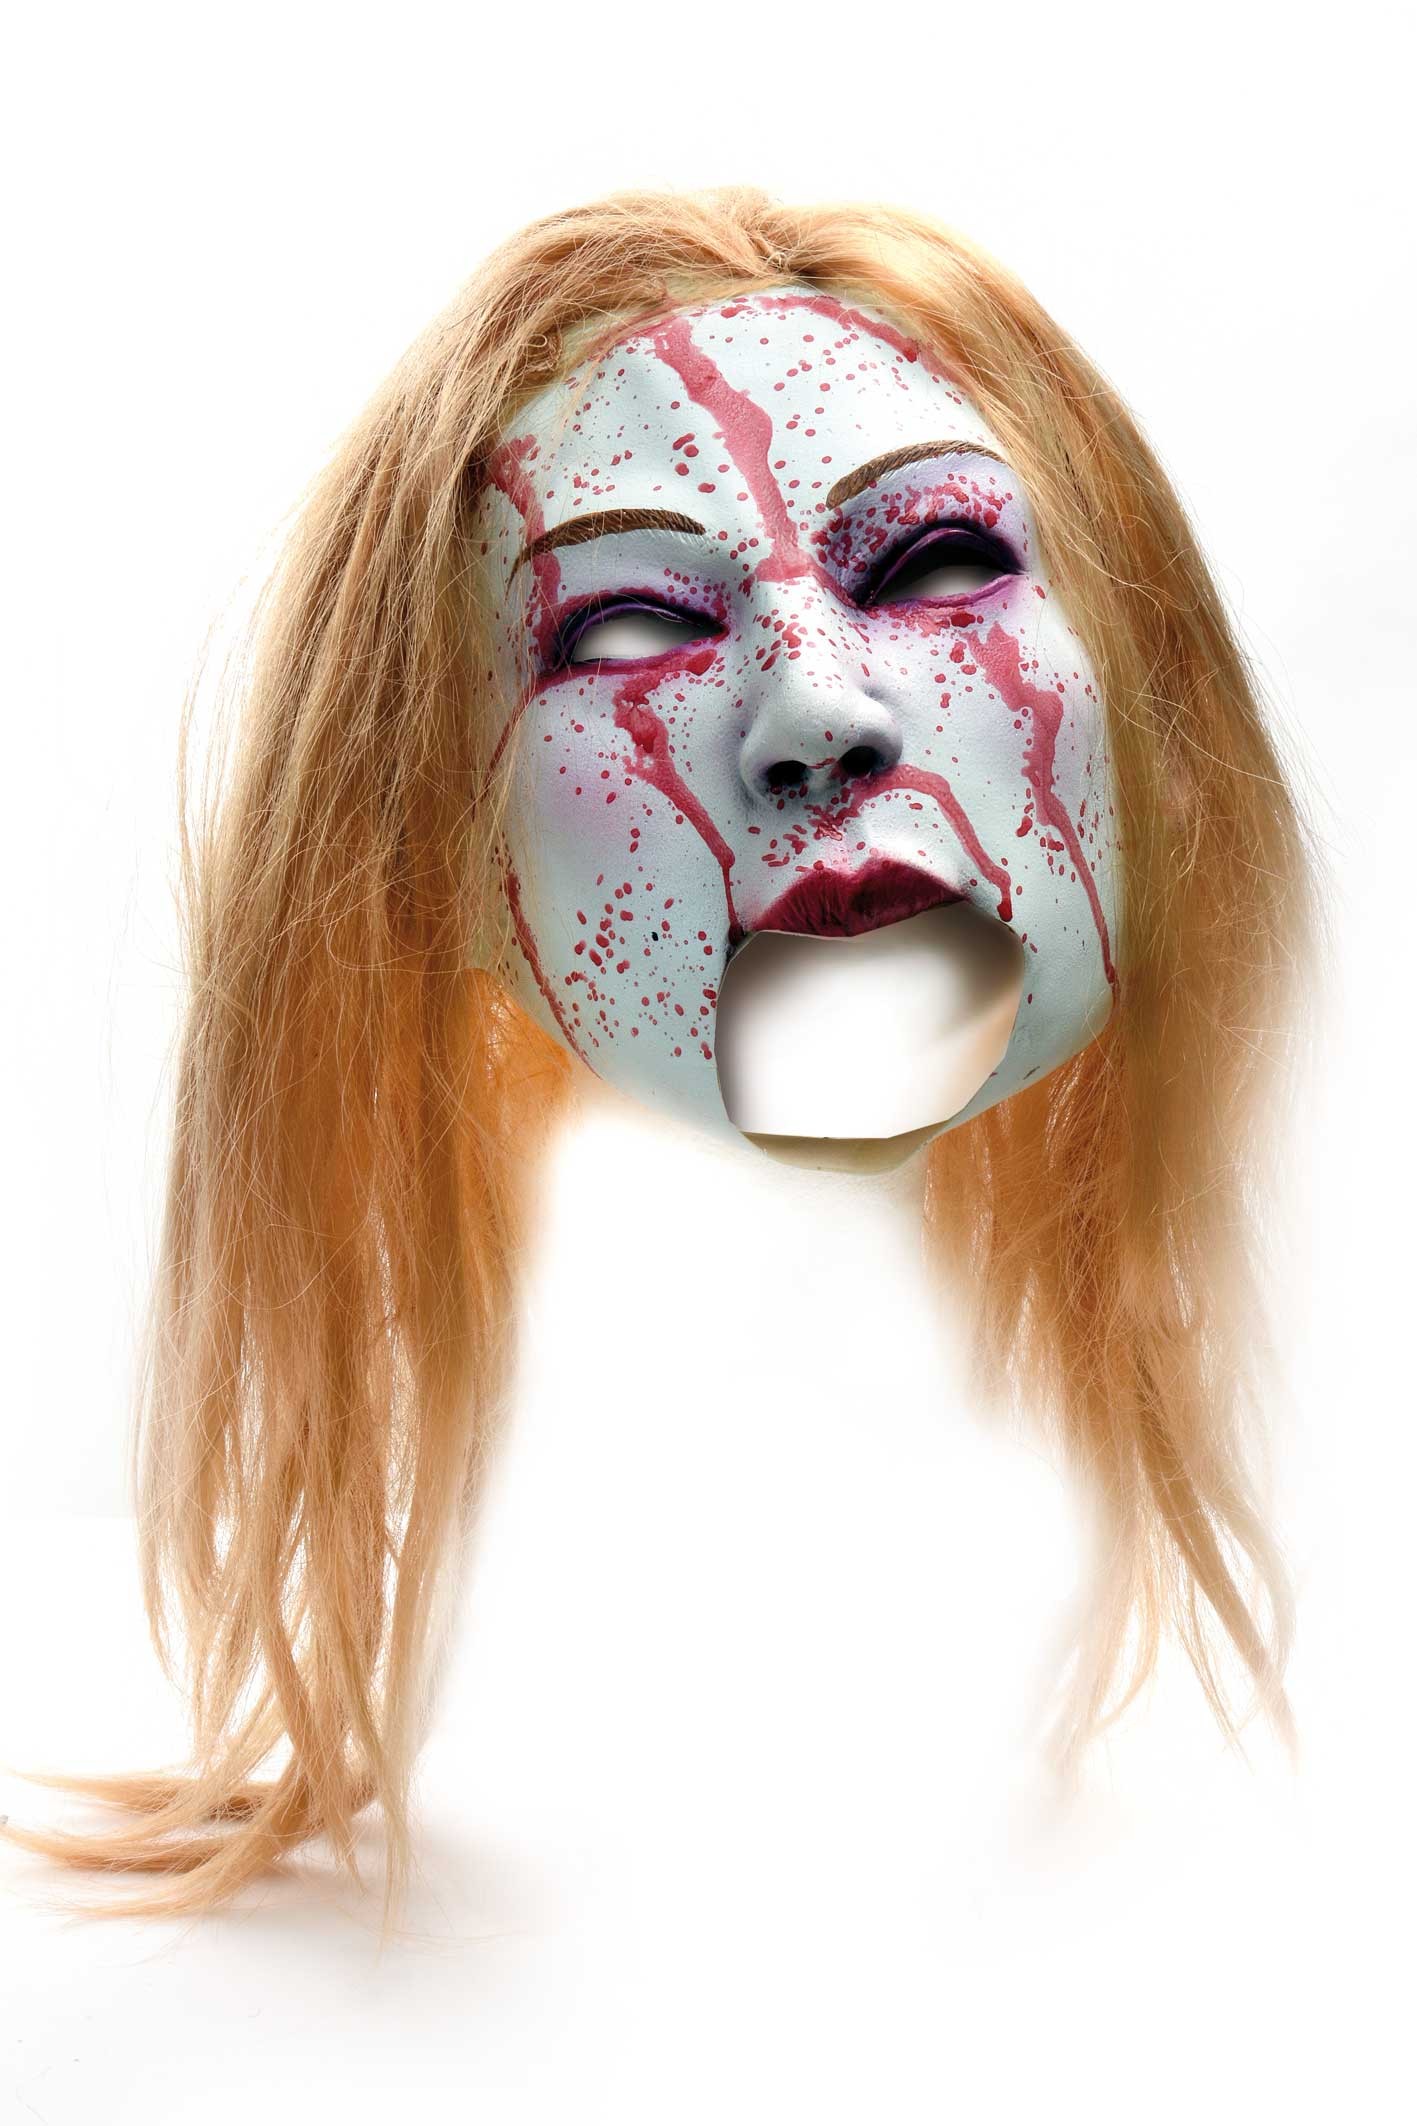 Hexenmaske Mit Haaren Hexe Maske Perucke Gesicht Halloween Gummimaske